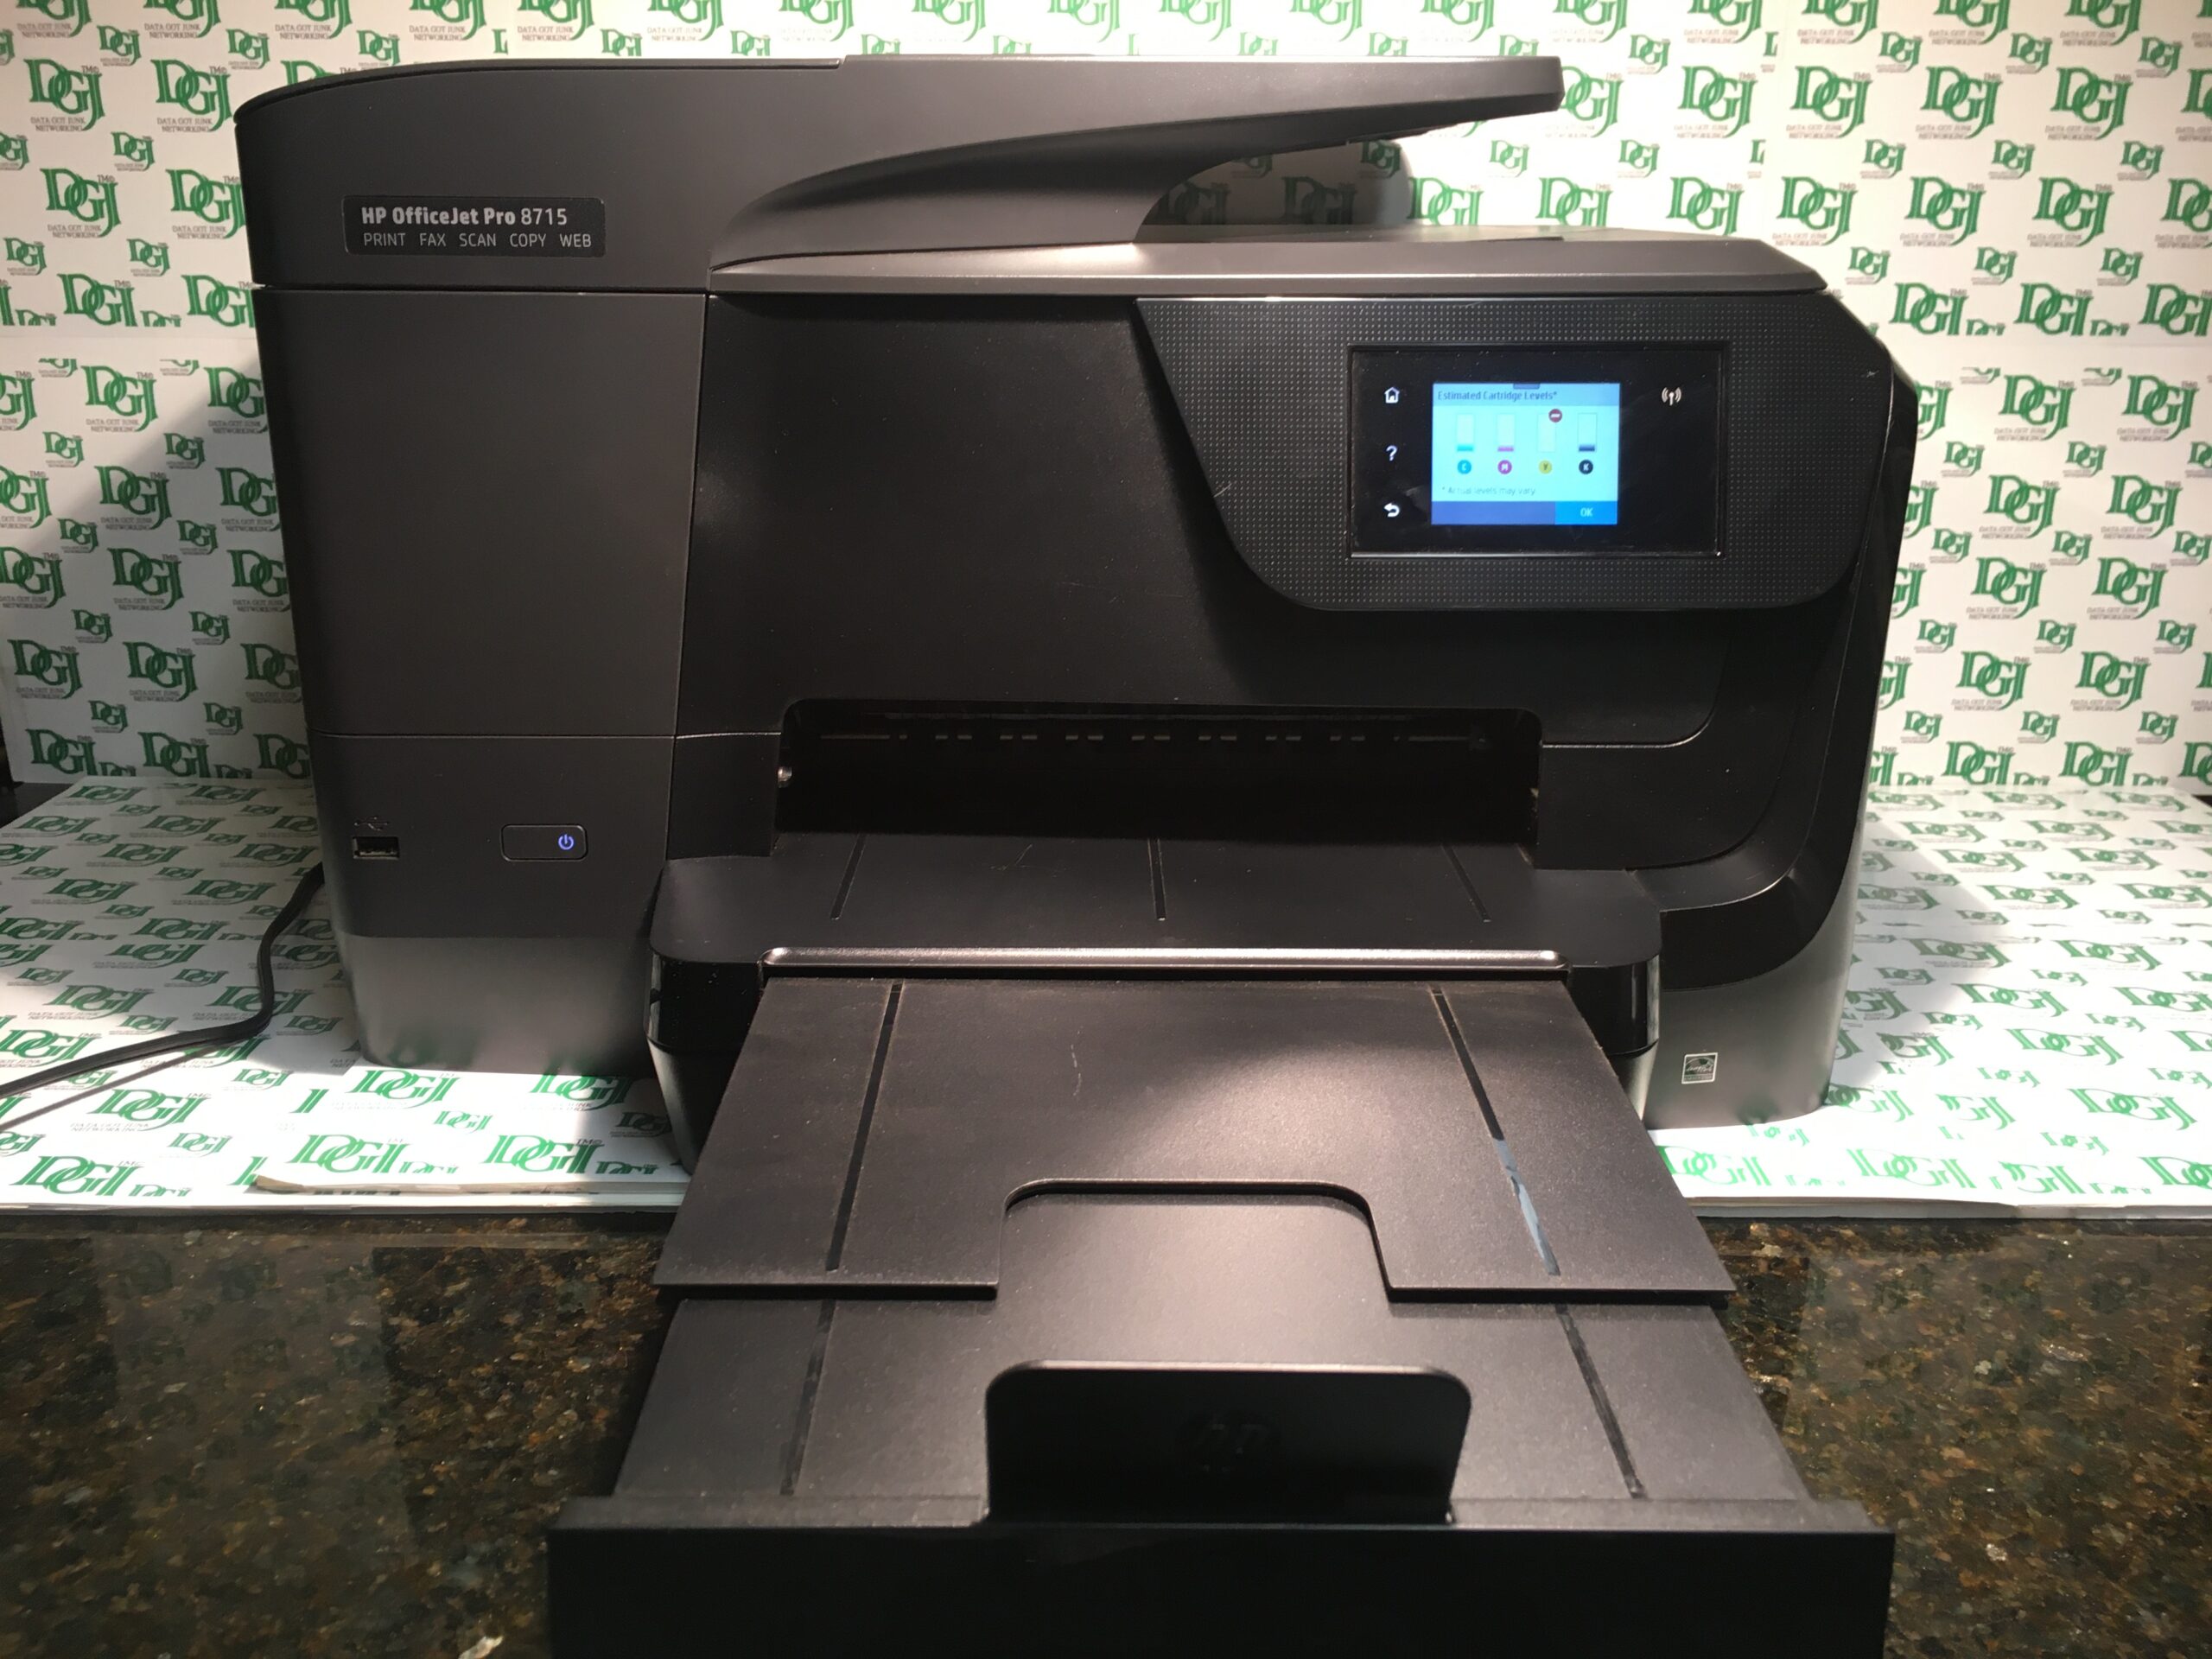 OfficeJet Pro 8715 All-In-One Inkjet Printer - Junk